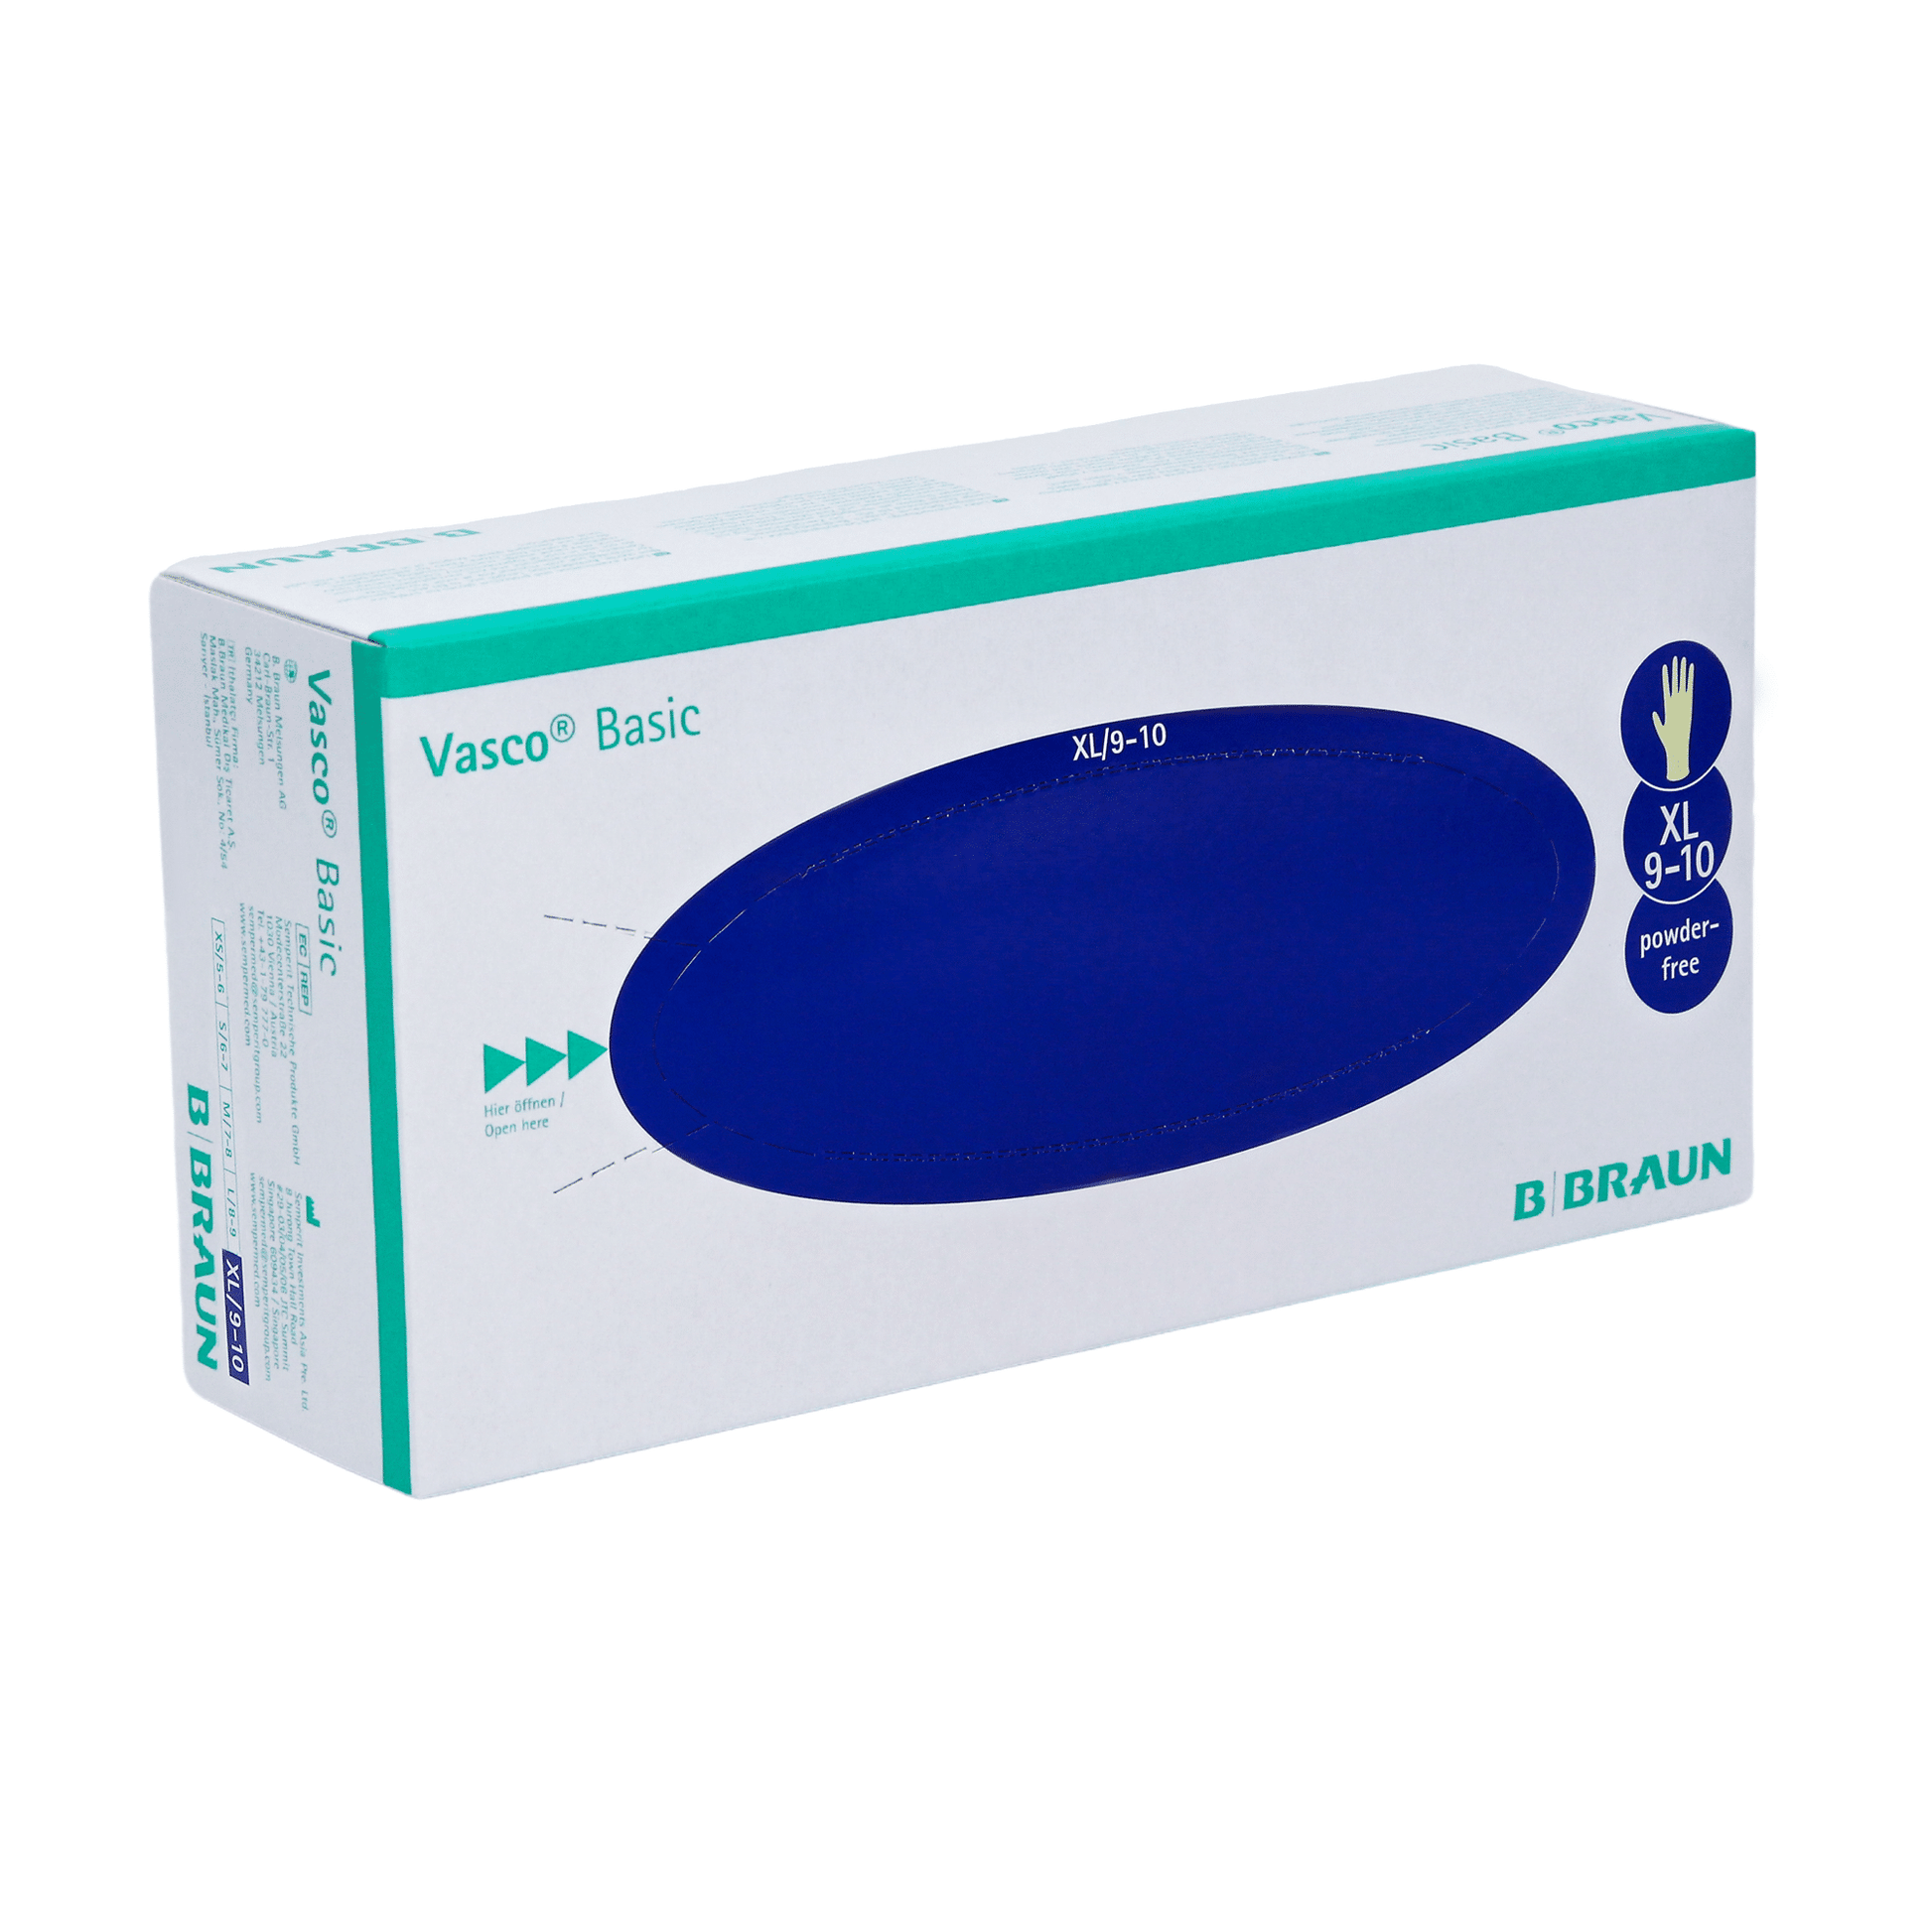 Eine Schachtel B. Braun Vasco® Basic Untersuchungshandschuhe aus Latex von B. Braun Melsungen AG, Größe XL (9-10). Die Verpackung ist überwiegend weiß und blau mit einem Text, der die